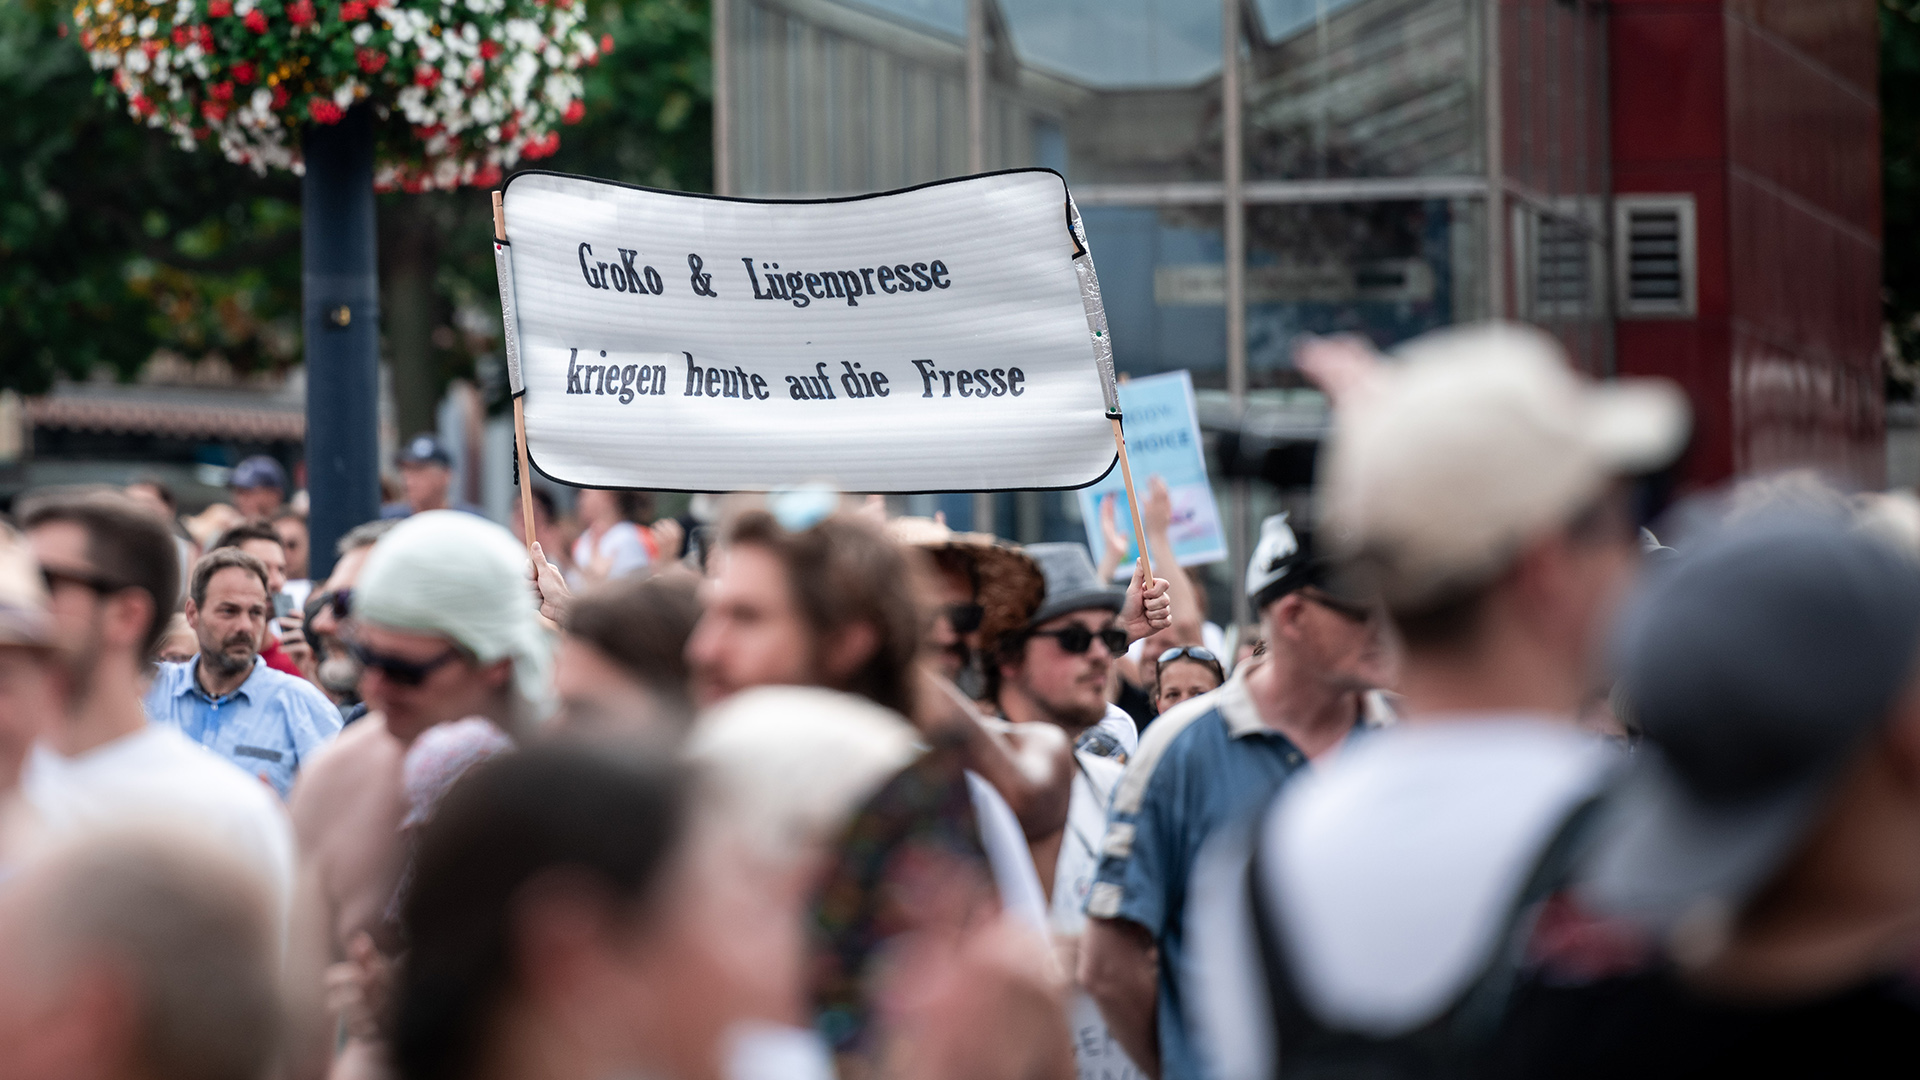 Nordrhein-Westfalen, Dortmund: Ein Teilnehmer der Demonstration "Querdenken-231"hält ein Schild auf dem "Groko und Lügenpresse kriegen heute auf die Fresse" steht, Archivbild August 2020 | dpa